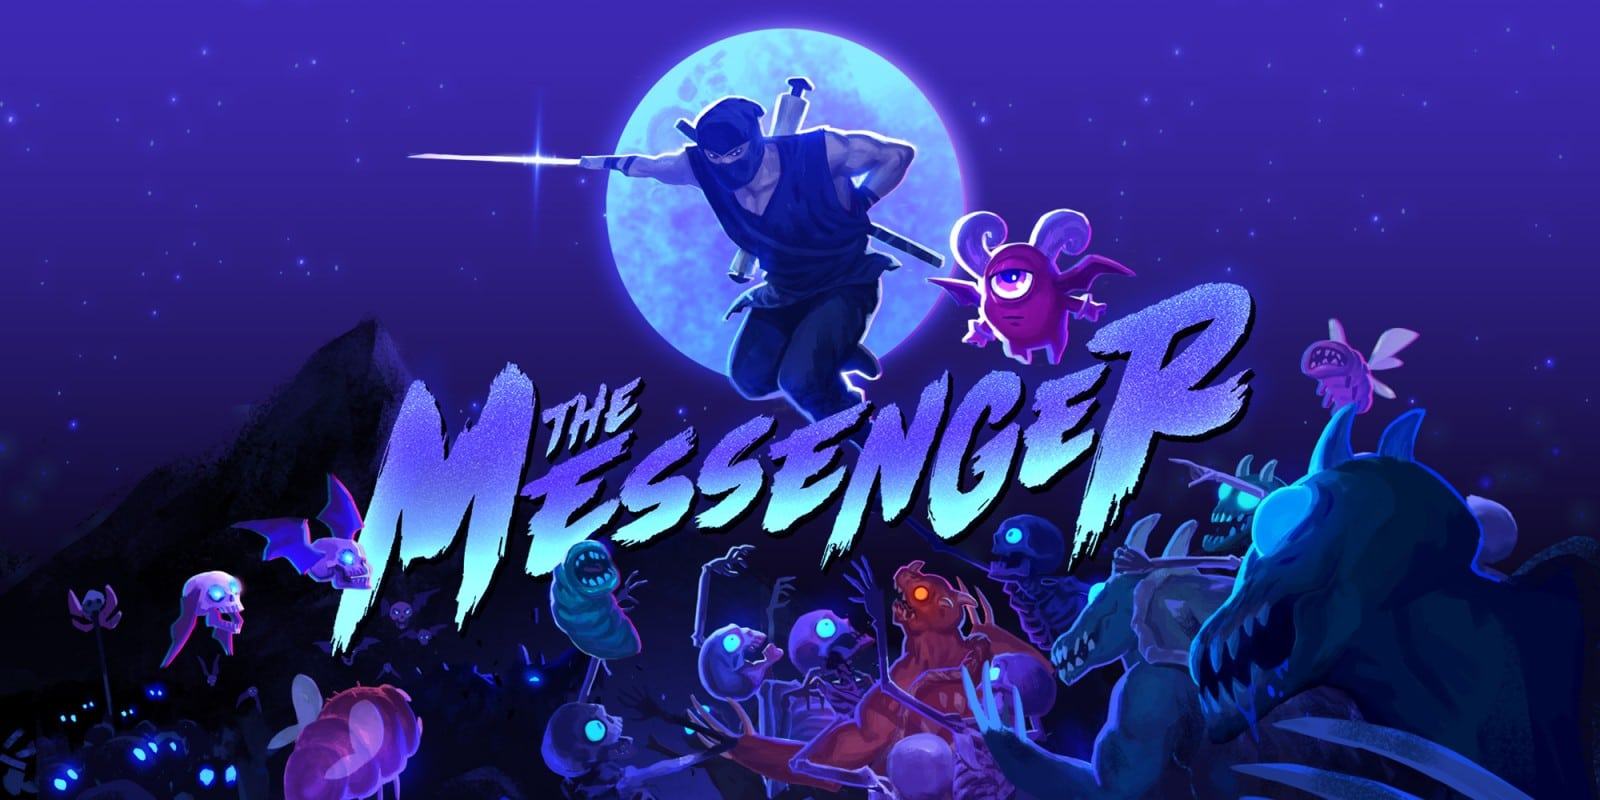 Copertina di The Messenger per i giochi in uscita a marzo